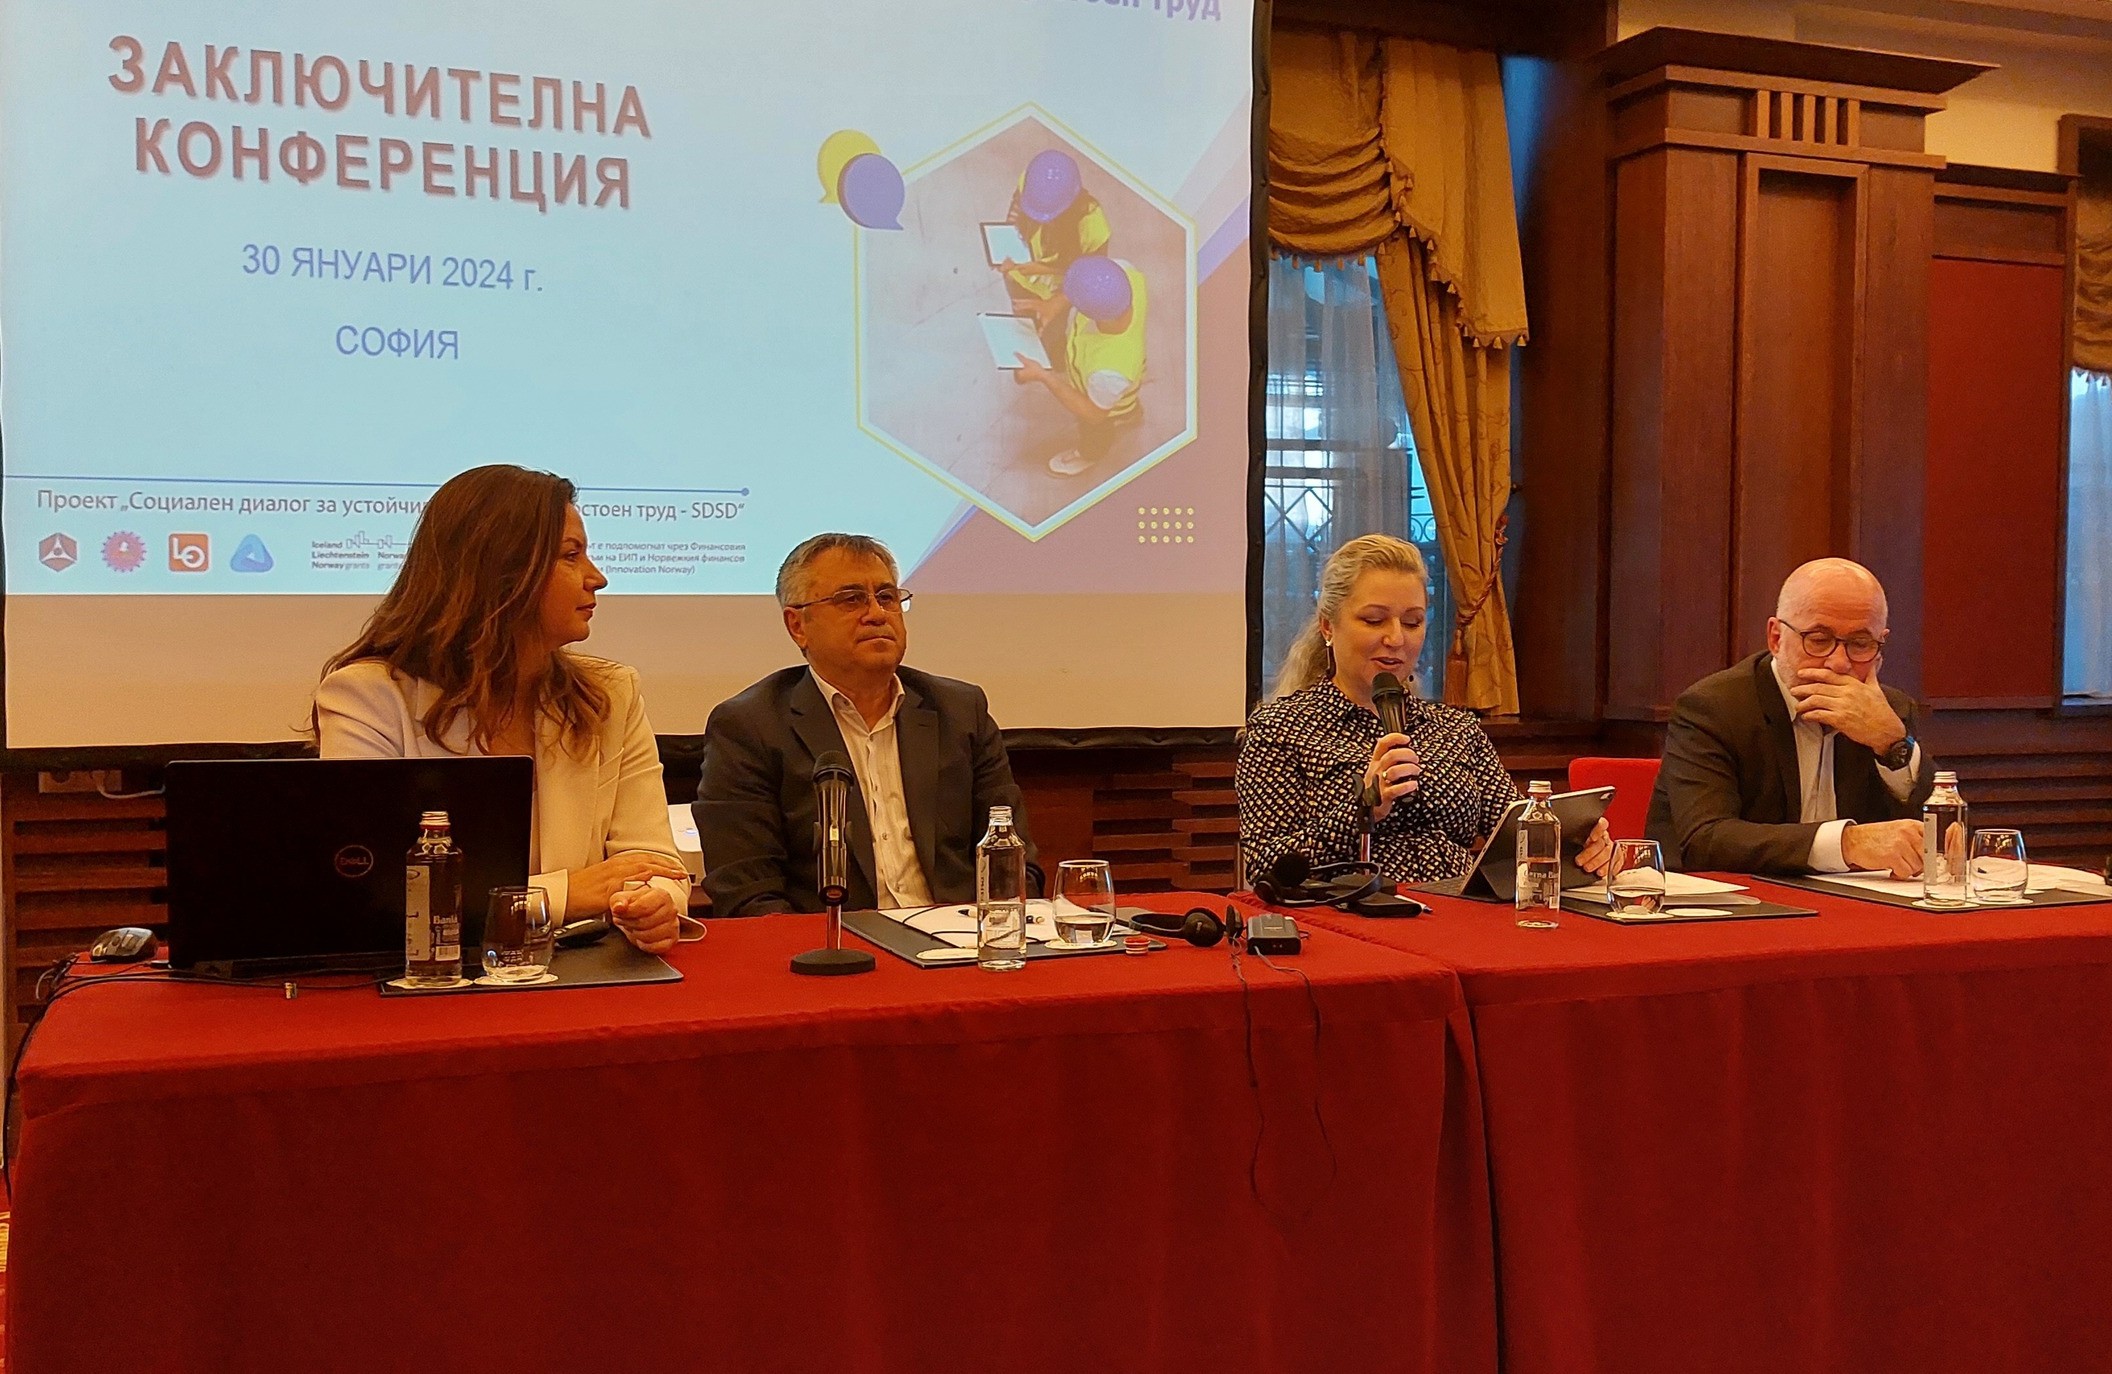 Заключителна конференция по проект SDSD се проведе в София